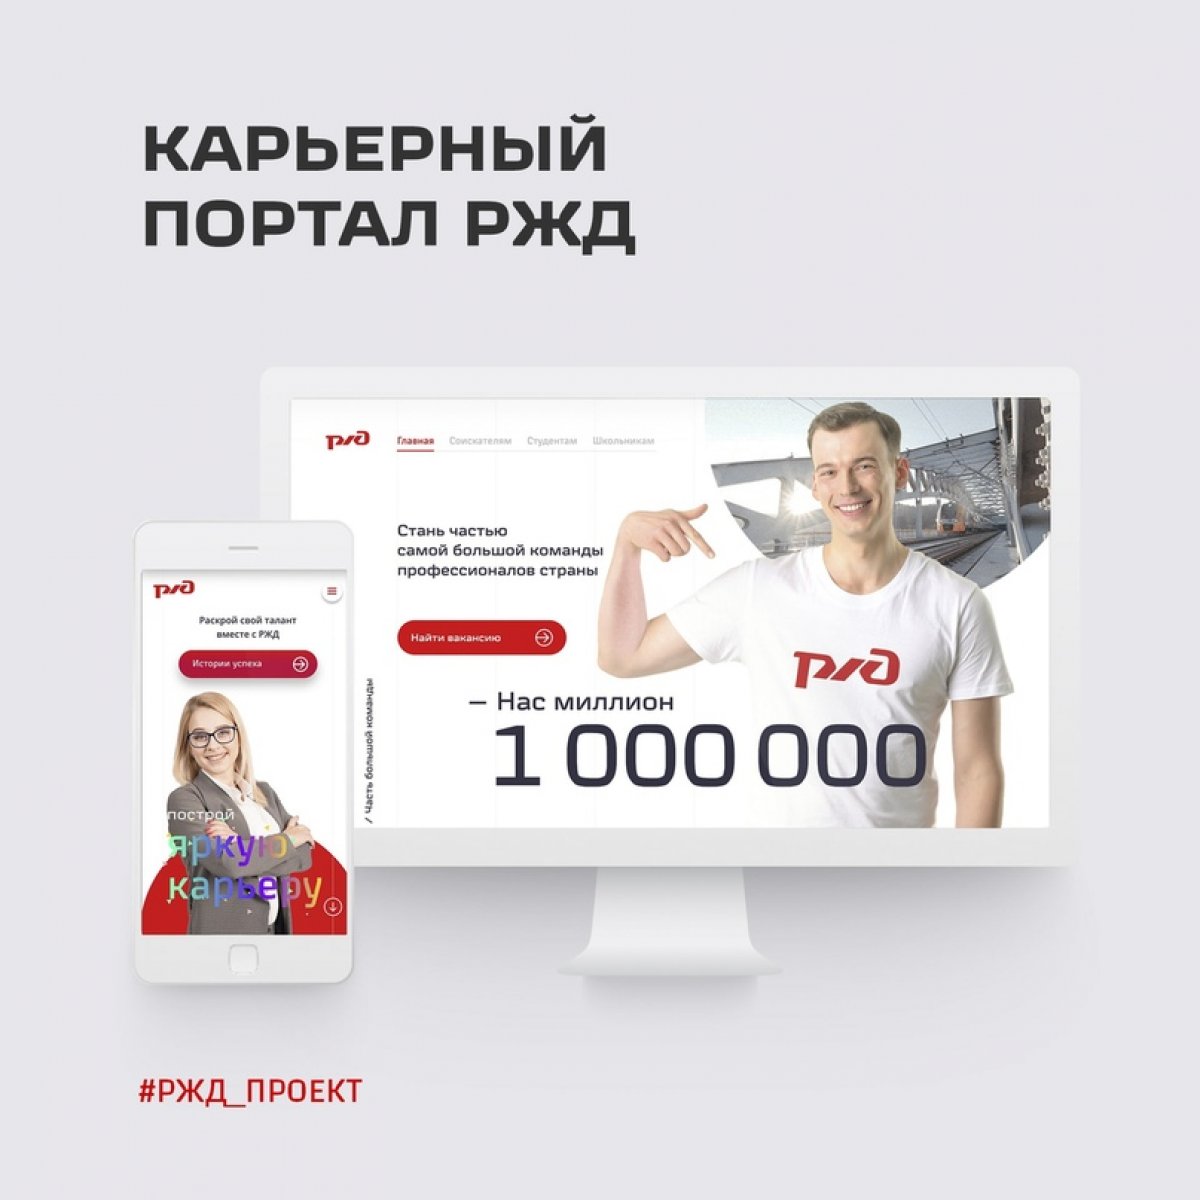 Хорошая новость! РЖД запускает новый полезный ресурс — Карьерный портал team.rzd.ru